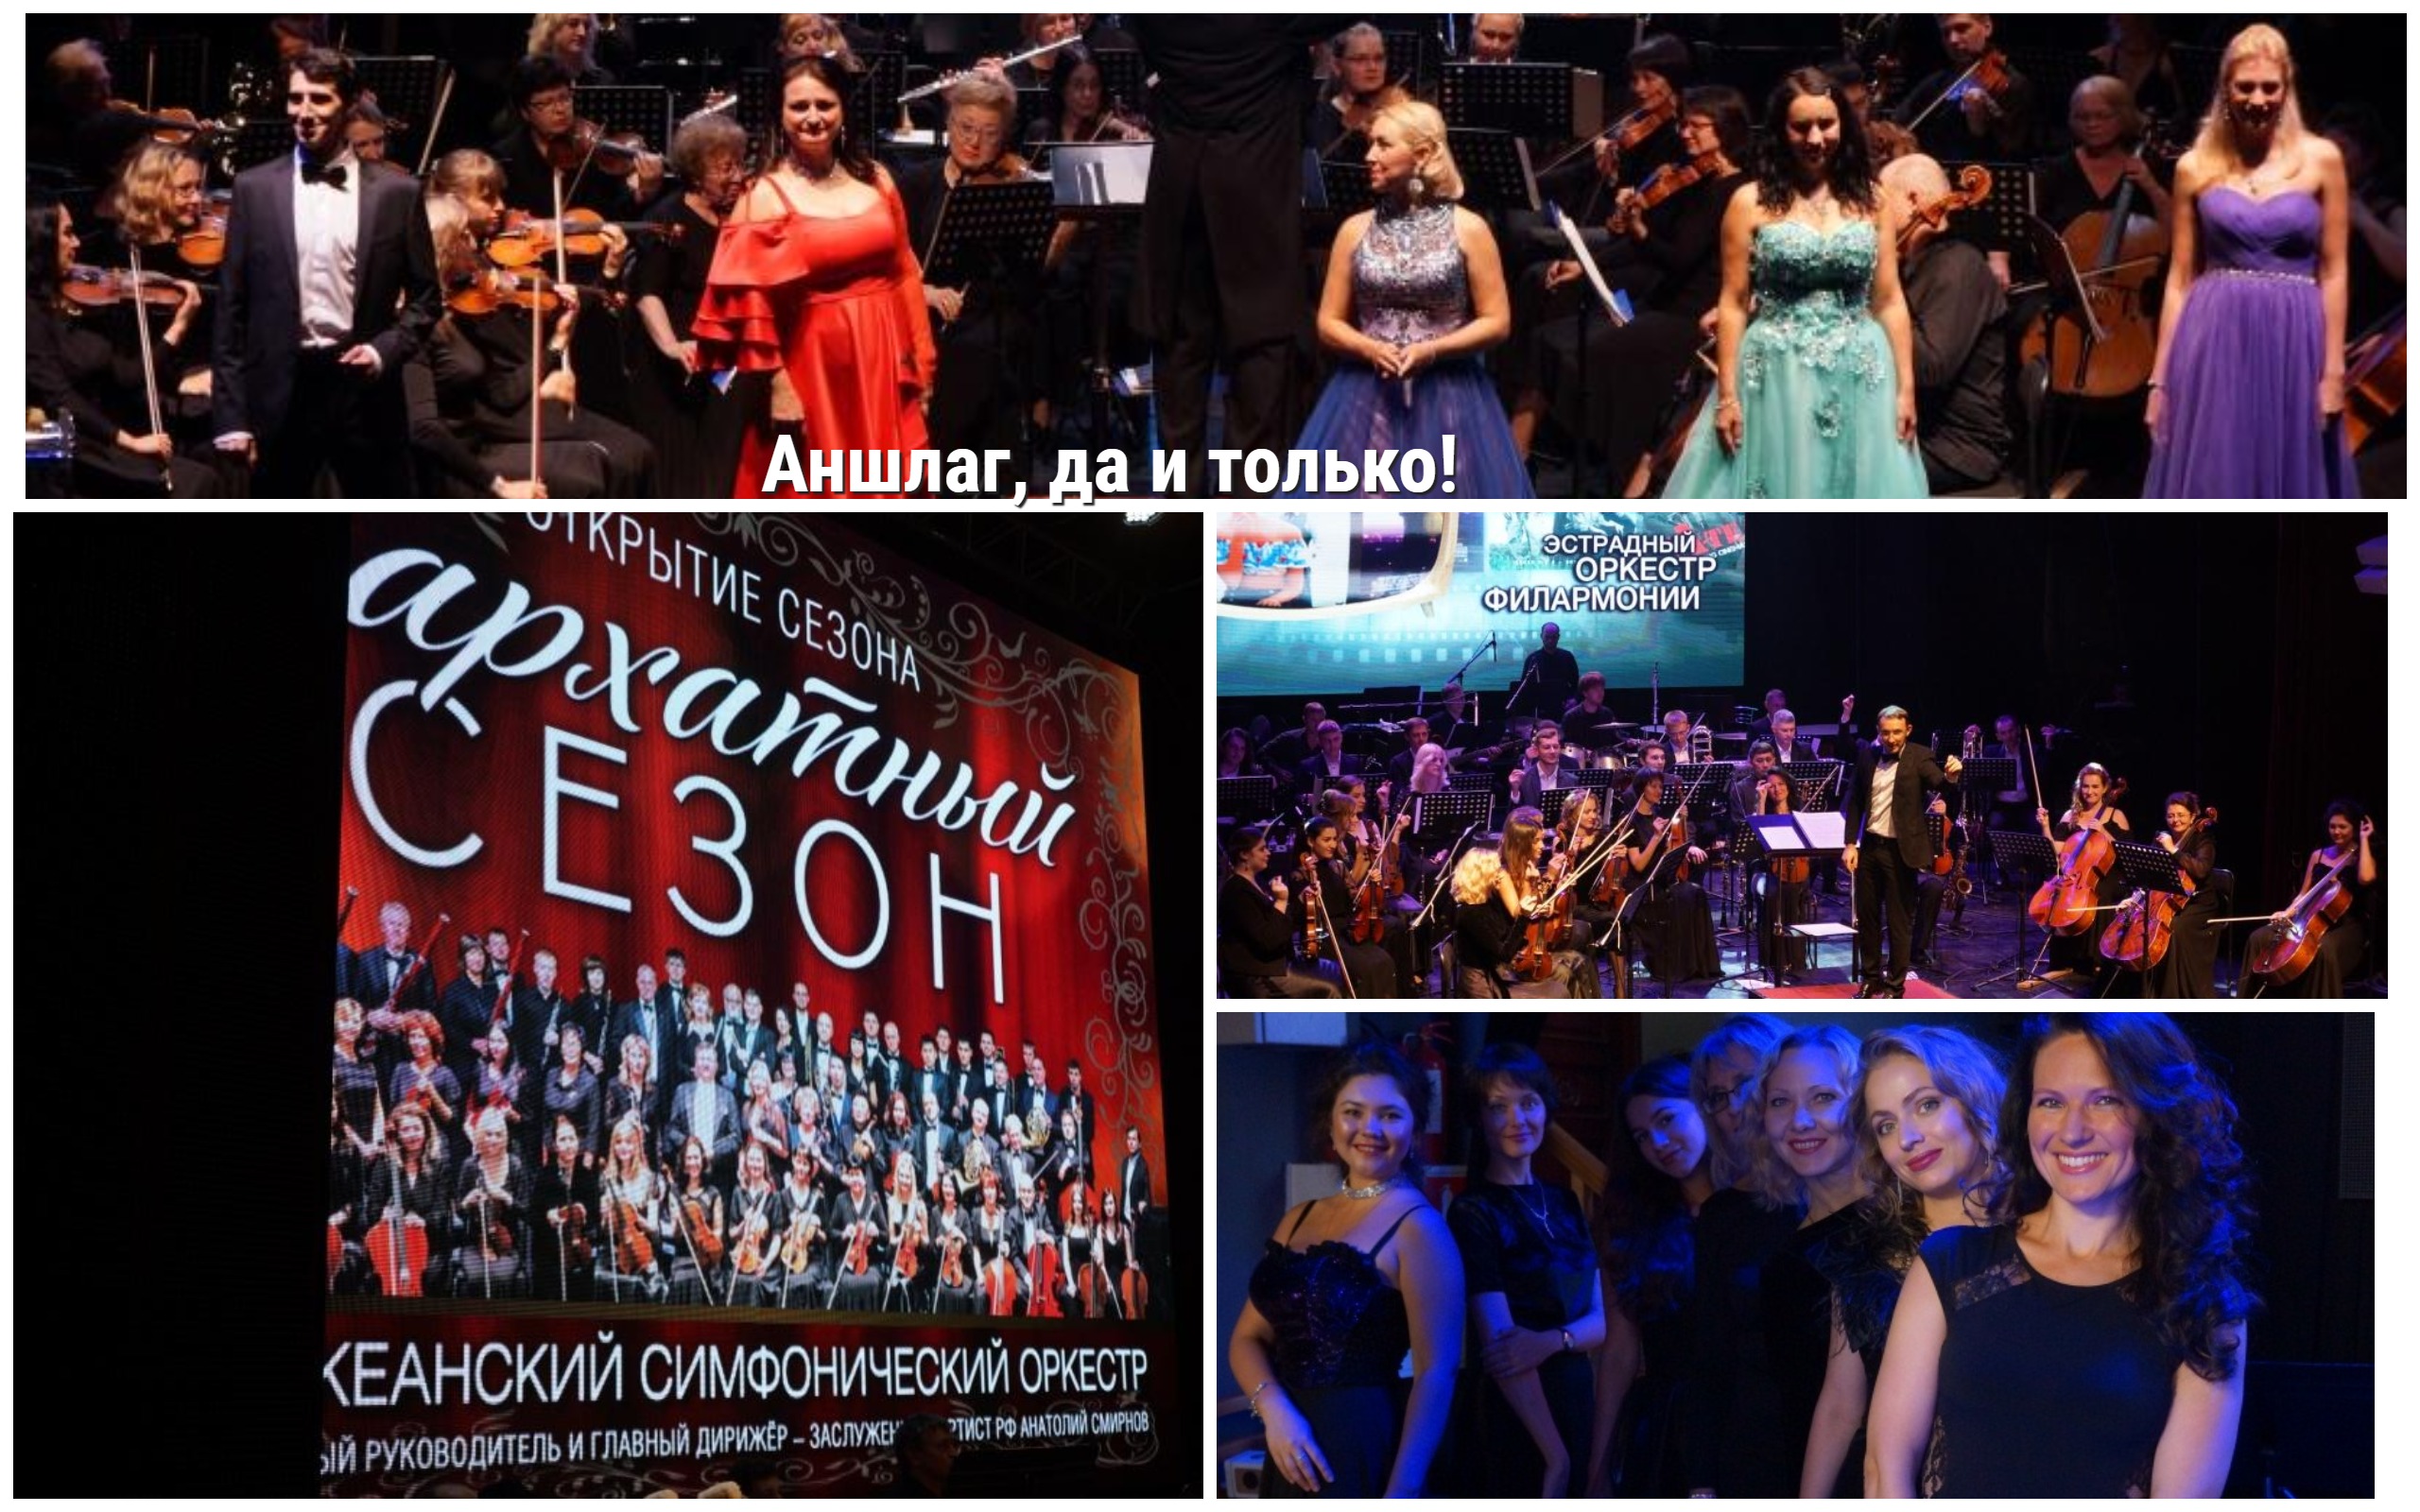 Аншлаг, да и только! Приморская краевая филармония с аншлагом открыла новый 81 концертный сезон.